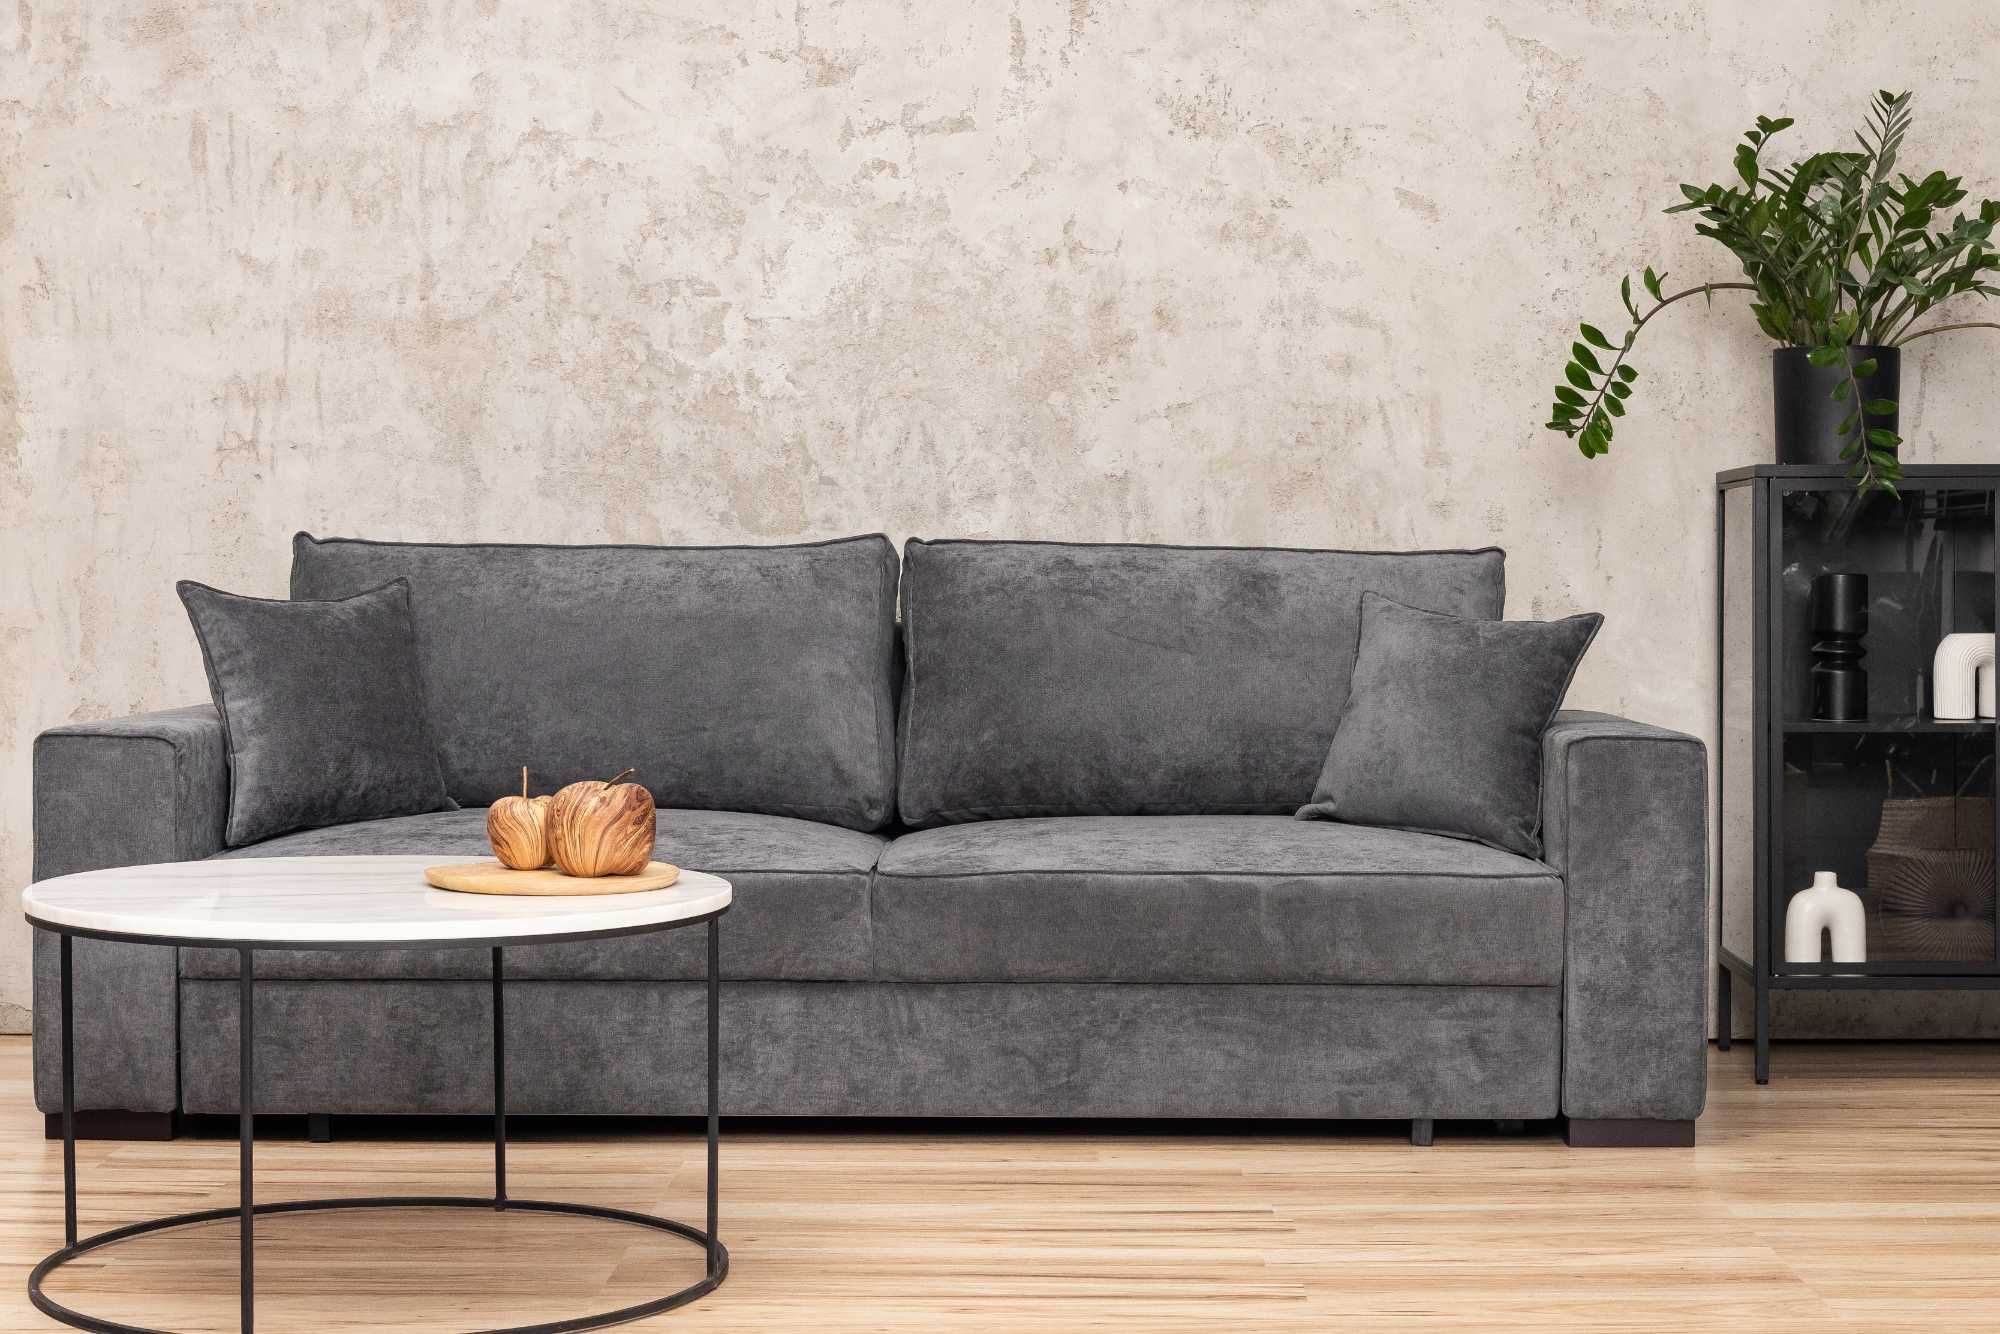 Sofa rozkładana ELZA 237X100cm producent darmowa dostawa